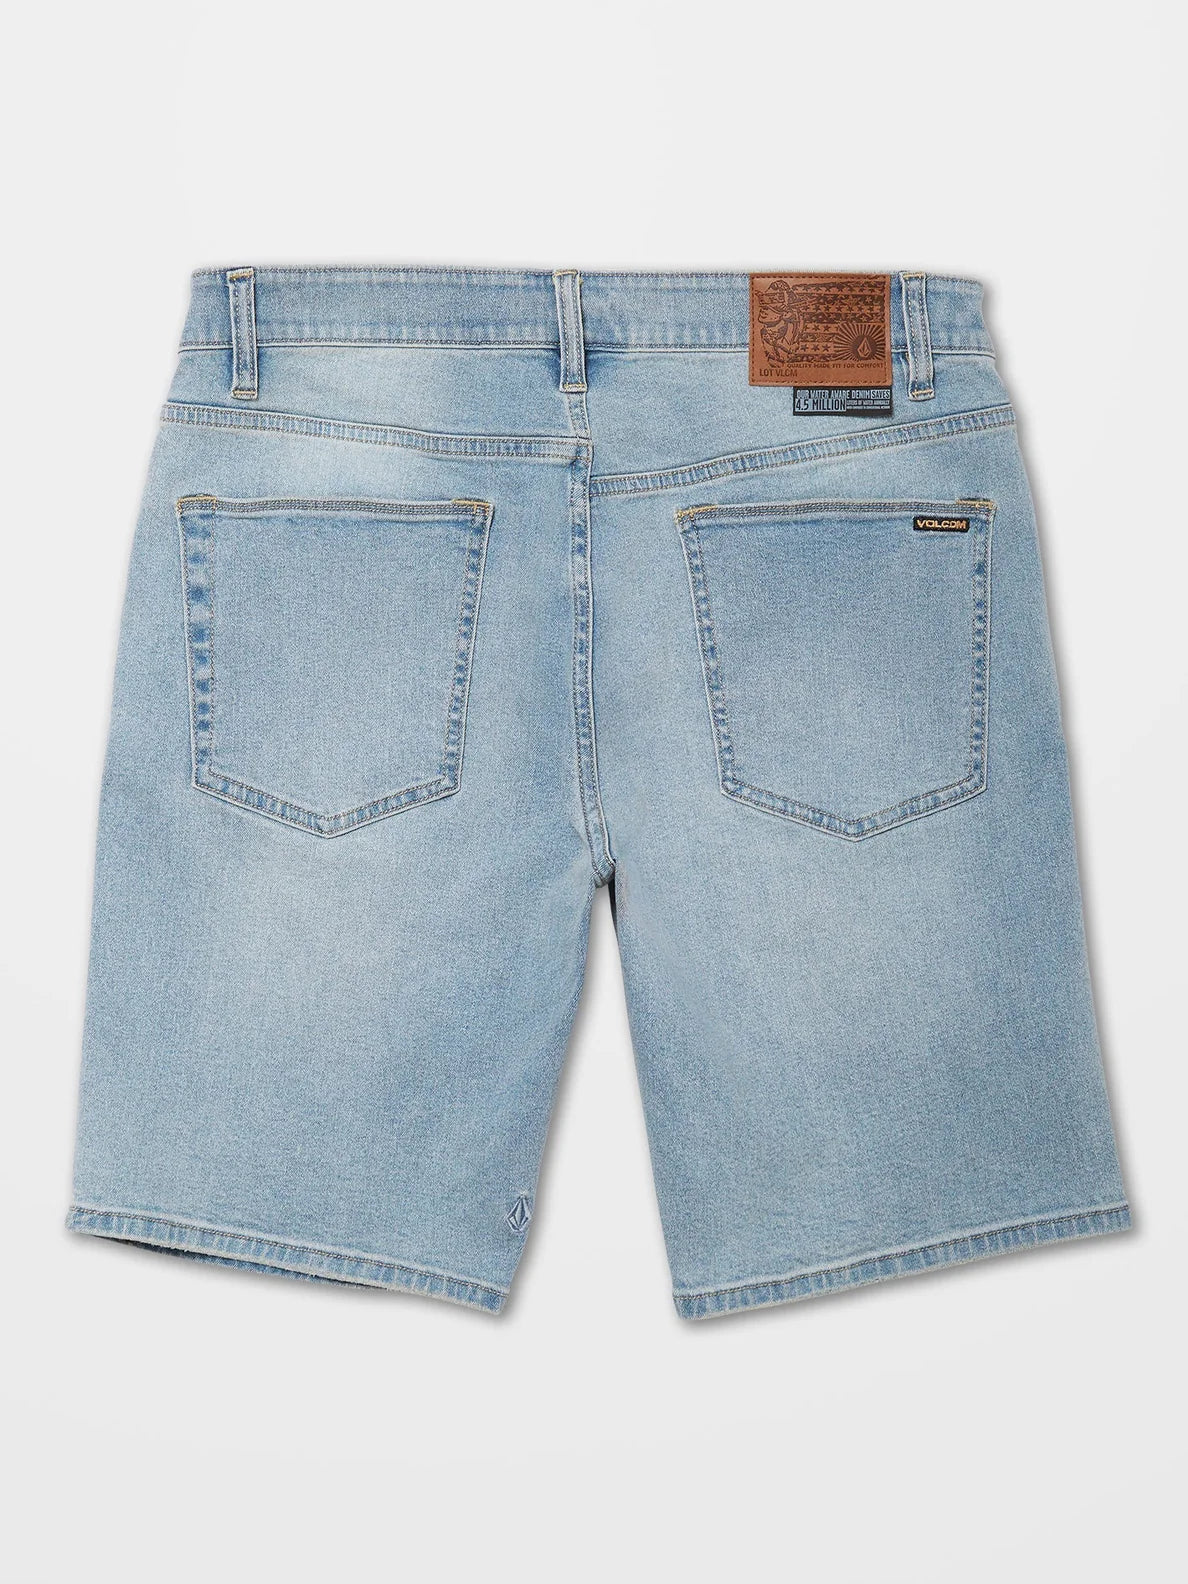 Pantalón Corto Volcom  Solver Denim - Worker Indigo Vintage | Pantalones cortos de Hombre | Todos los pantalones de hombre | Volcom Shop | surfdevils.com